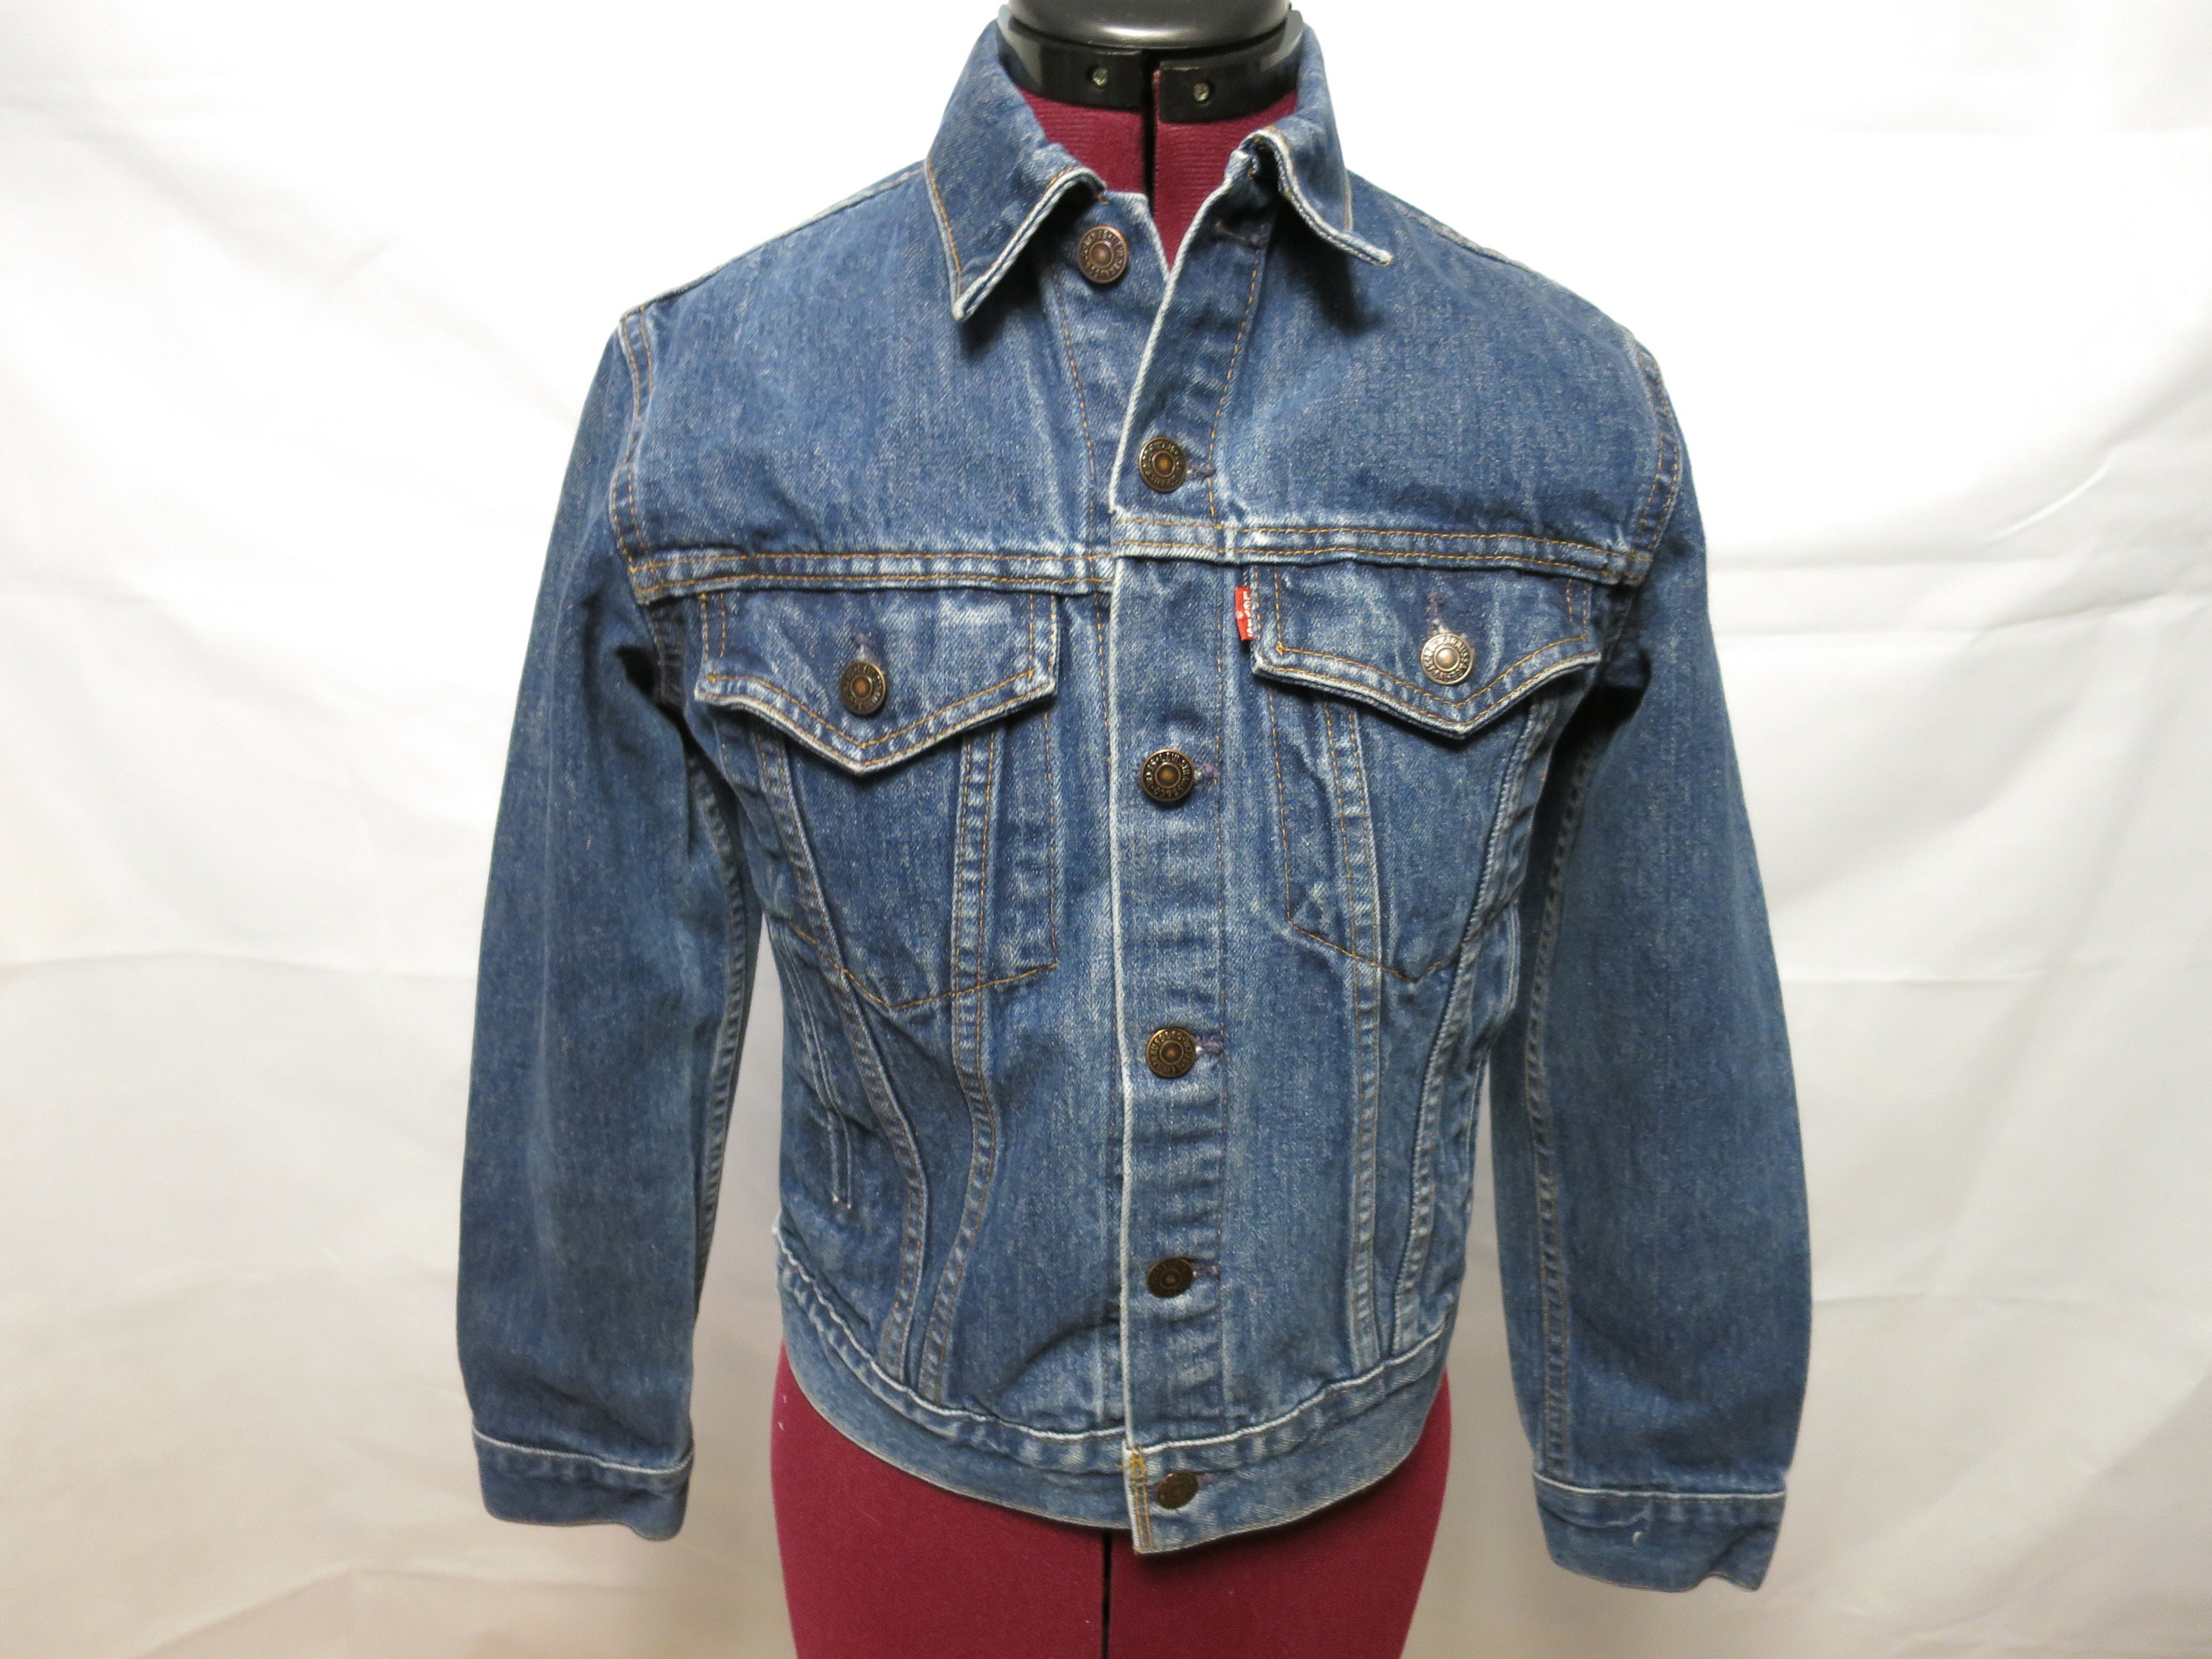 Vintage Denim Jacket Levis Trucker Jacket Size 18 Number 70706 - Etsy Canada